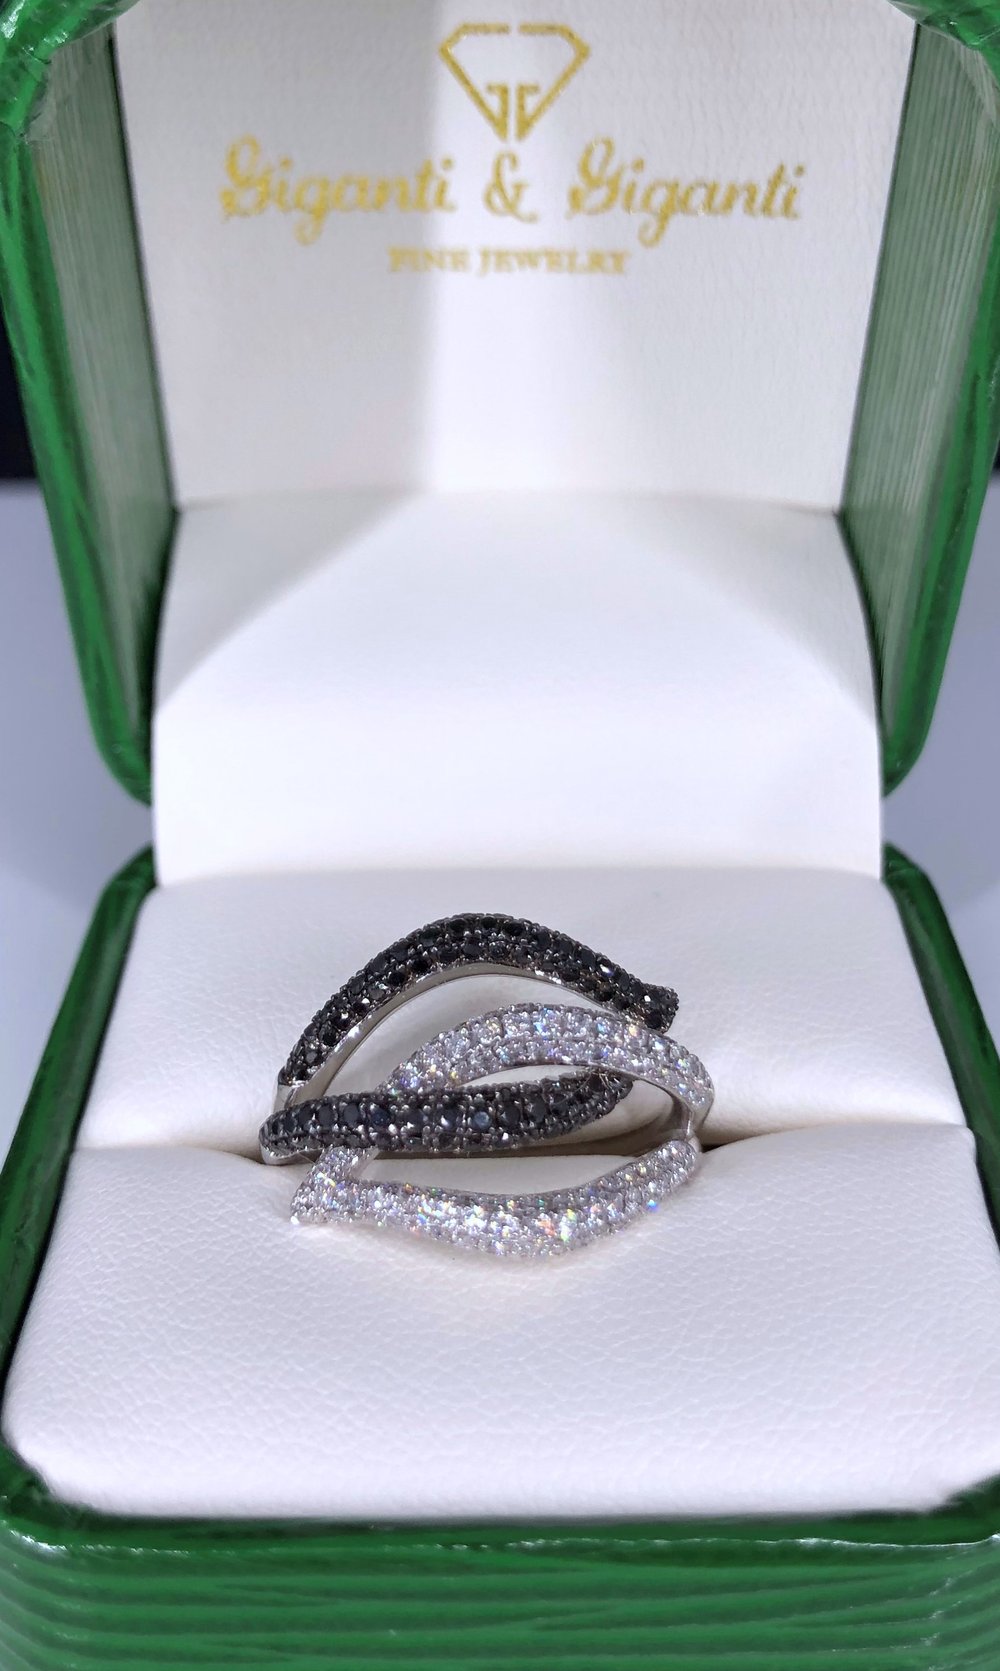 Black and White Diamond Ring 14k White Gold 1.15ctw Finger Size 6.25